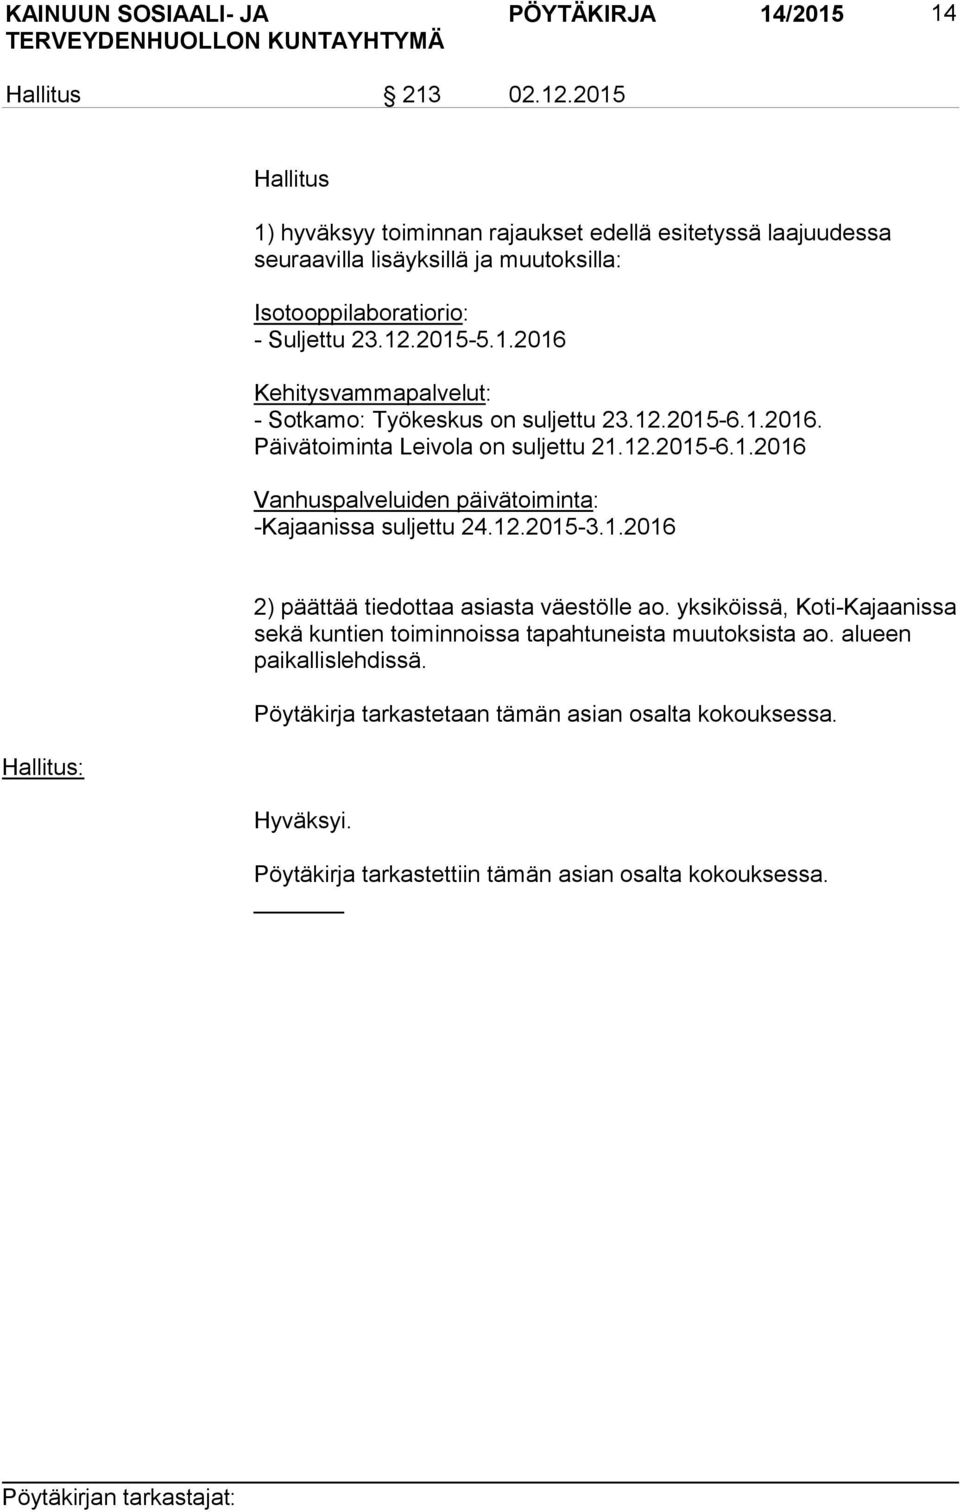 12.2015-6.1.2016. Päivätoiminta Leivola on suljettu 21.12.2015-6.1.2016 Vanhuspalveluiden päivätoiminta: -Kajaanissa suljettu 24.12.2015-3.1.2016 2) päättää tiedottaa asiasta väestölle ao.